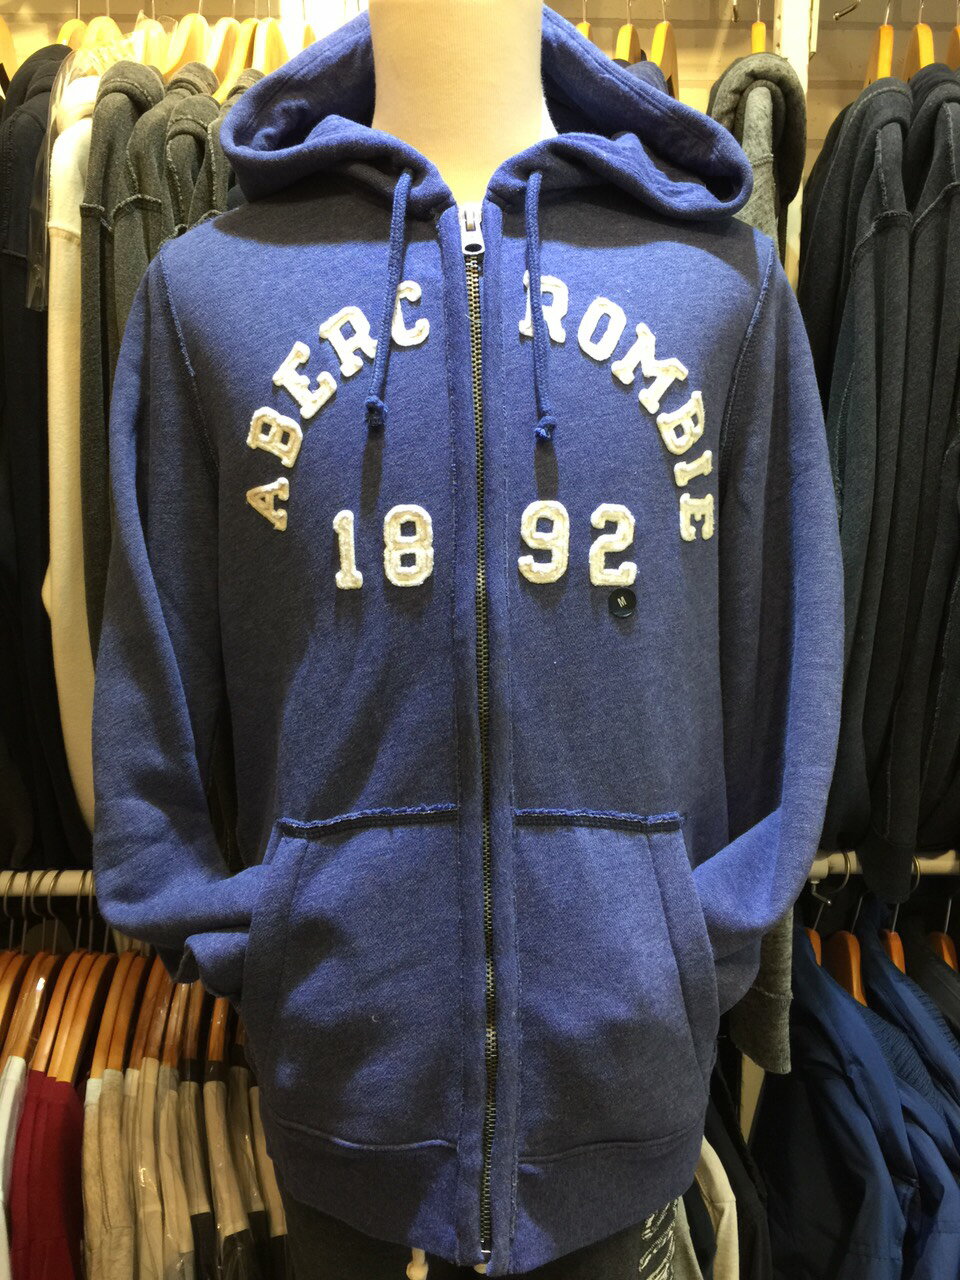 美國傑森』A&F(現貨)男生連帽長袖外套 Abercrombie & Fitch AF 麋鹿LOGO 內裏刷毛 藍色 秋冬新款